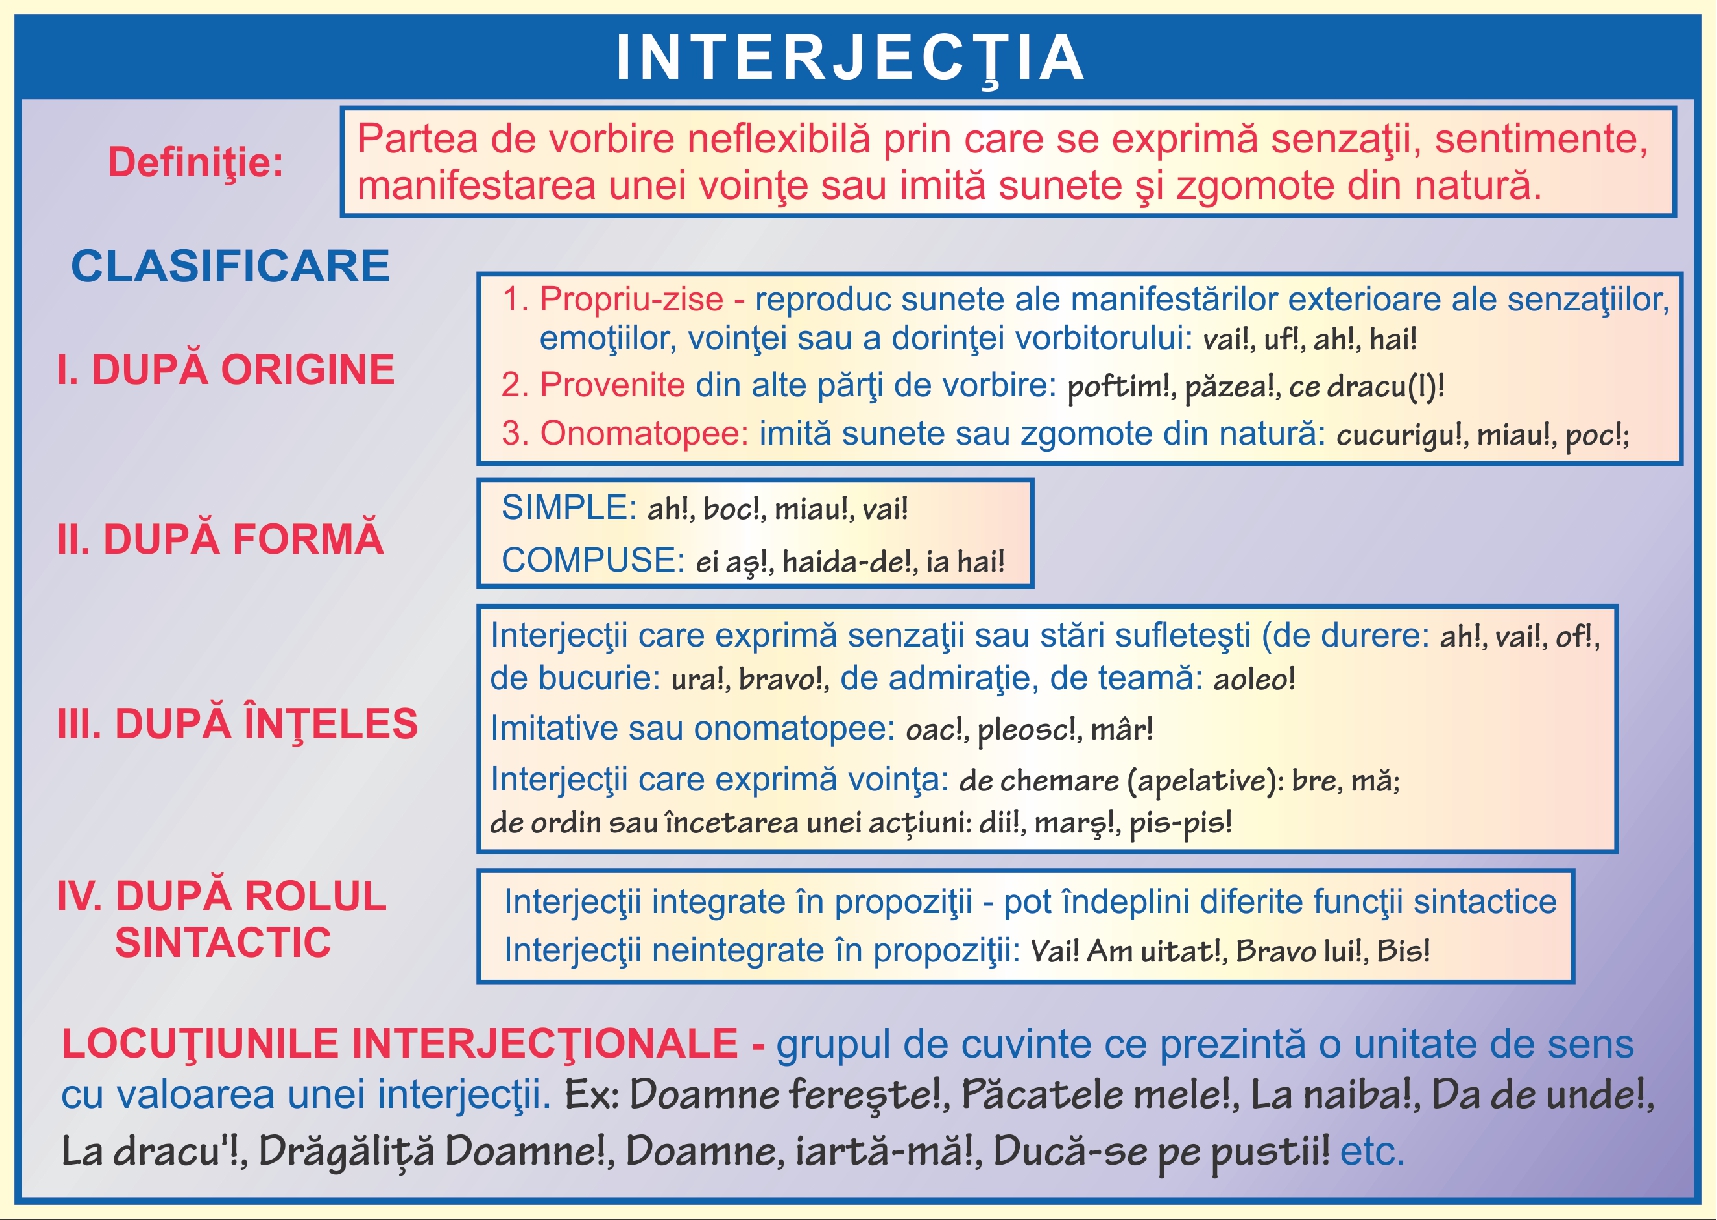 Interjectia